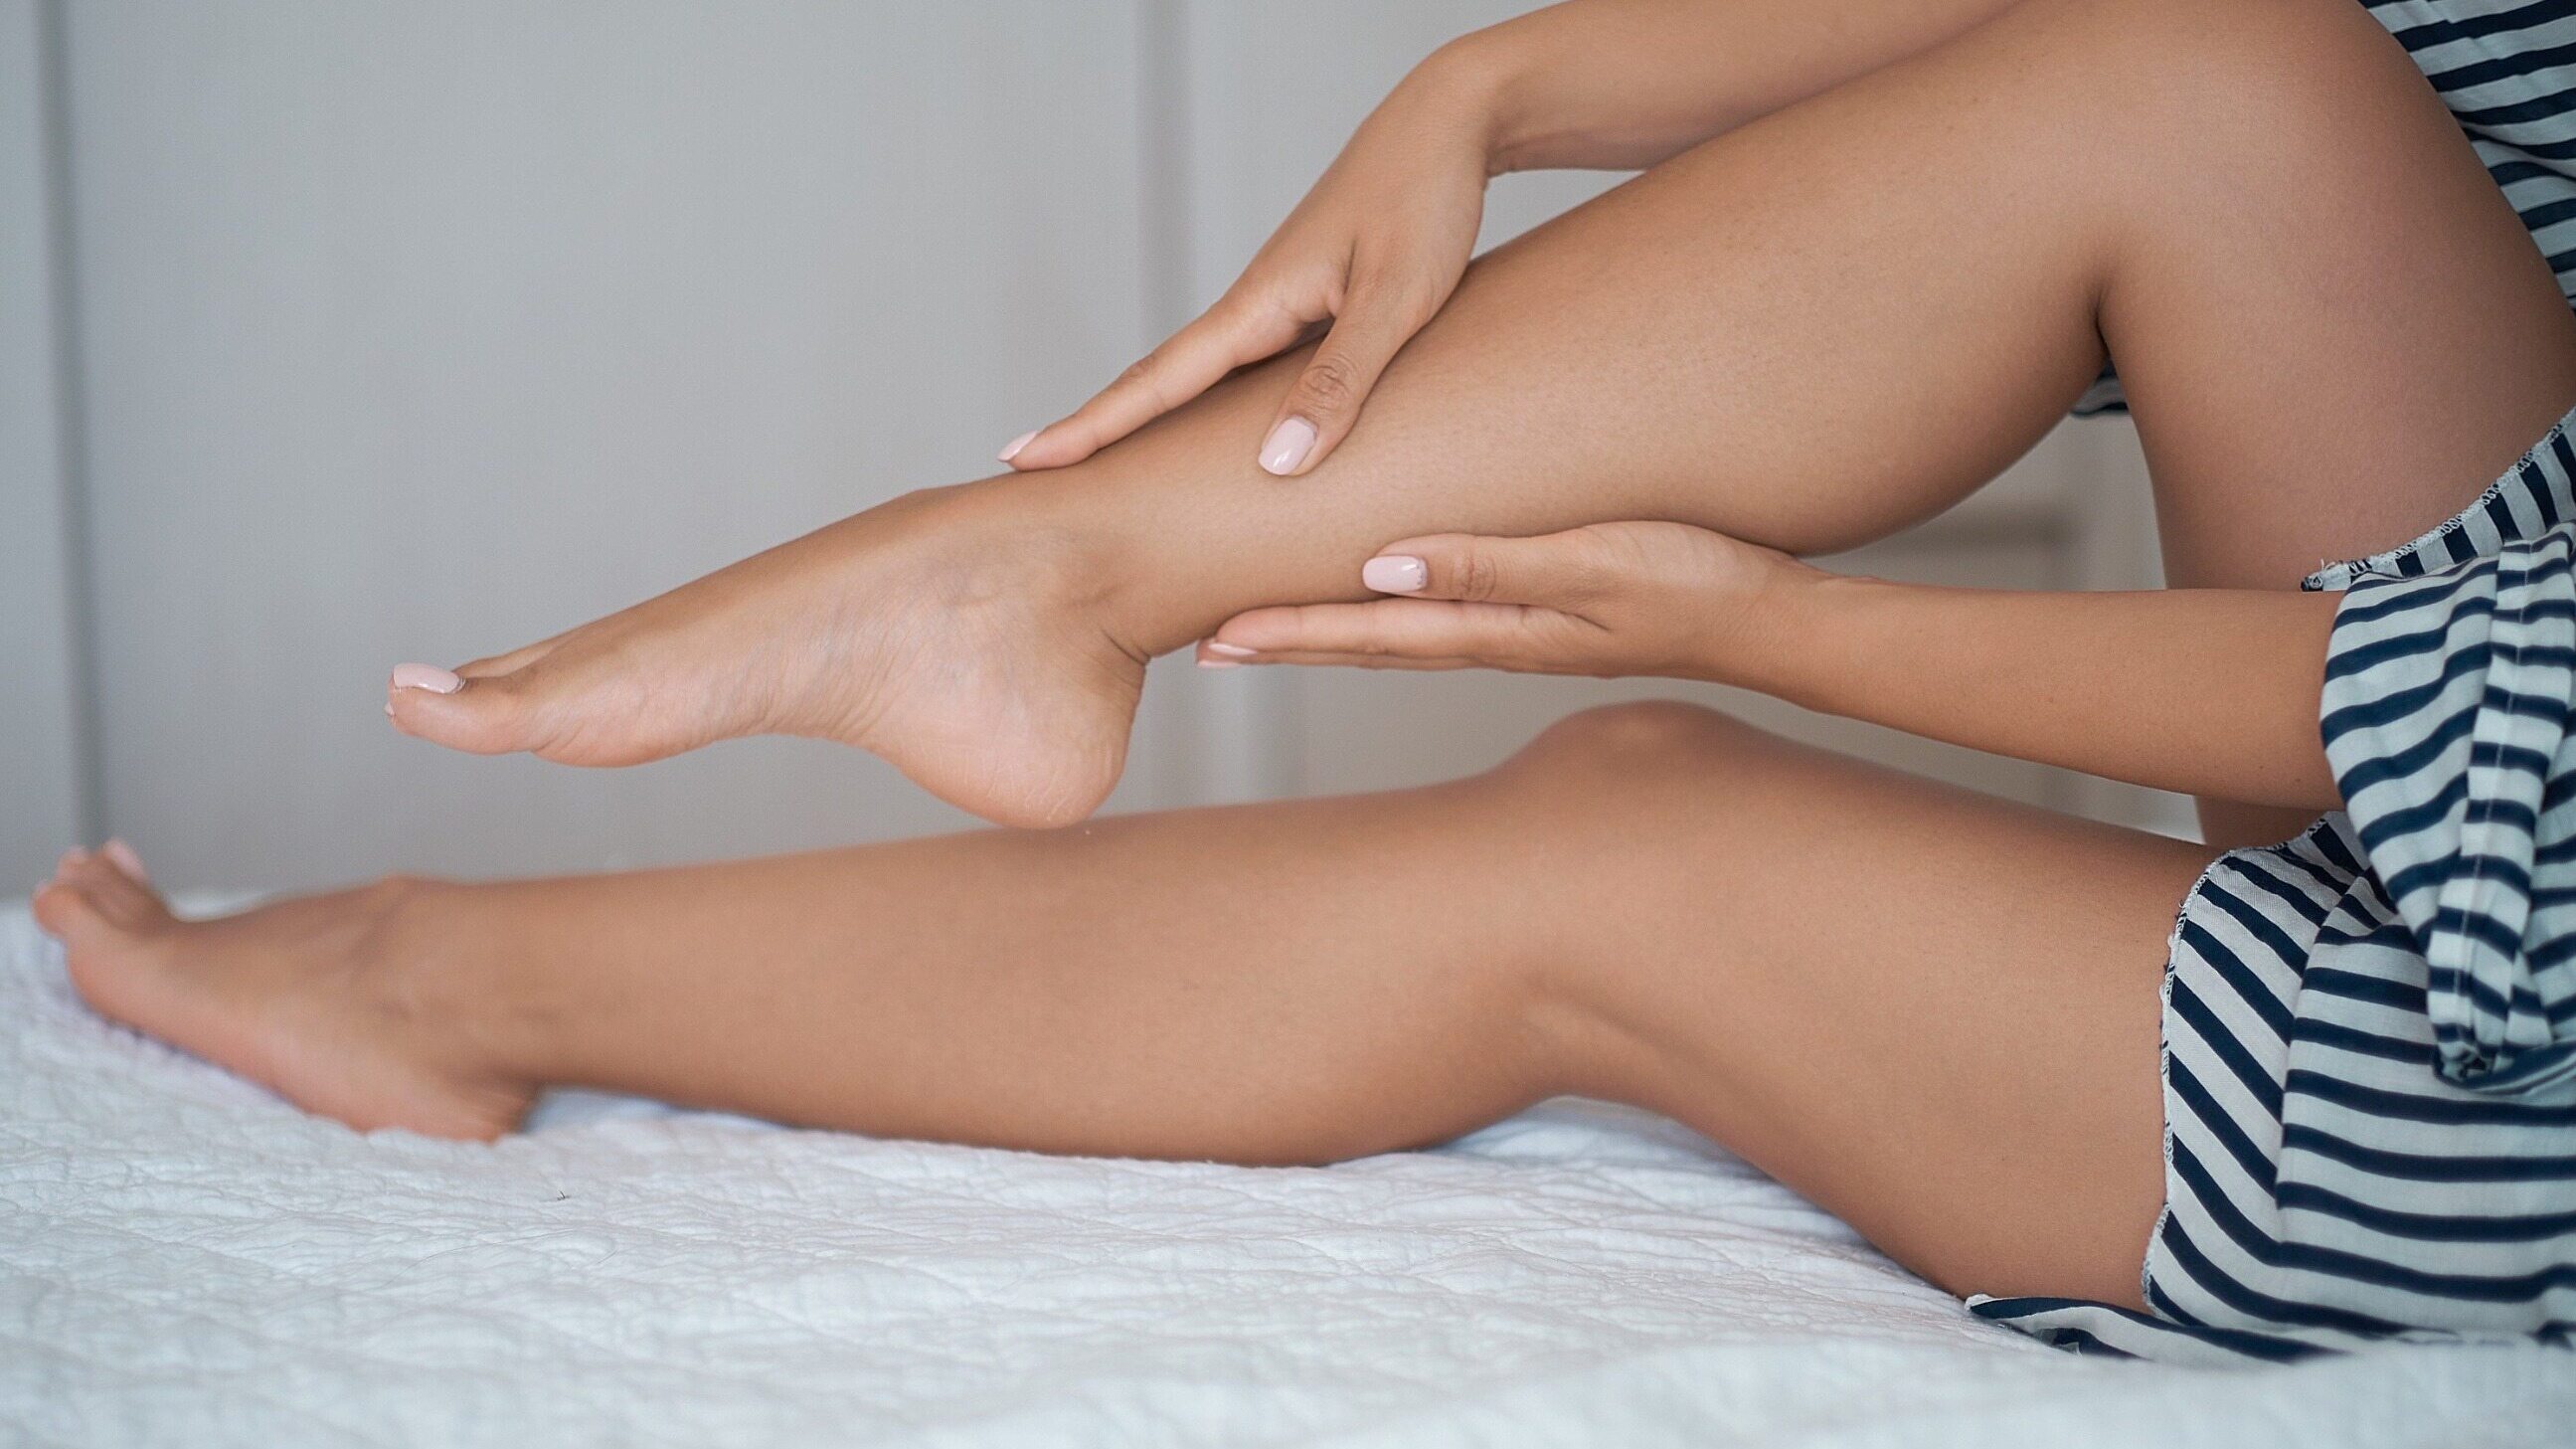 Dolor lateral del pie – Causas y tratamientos más comunes – Zdrowie Wprost